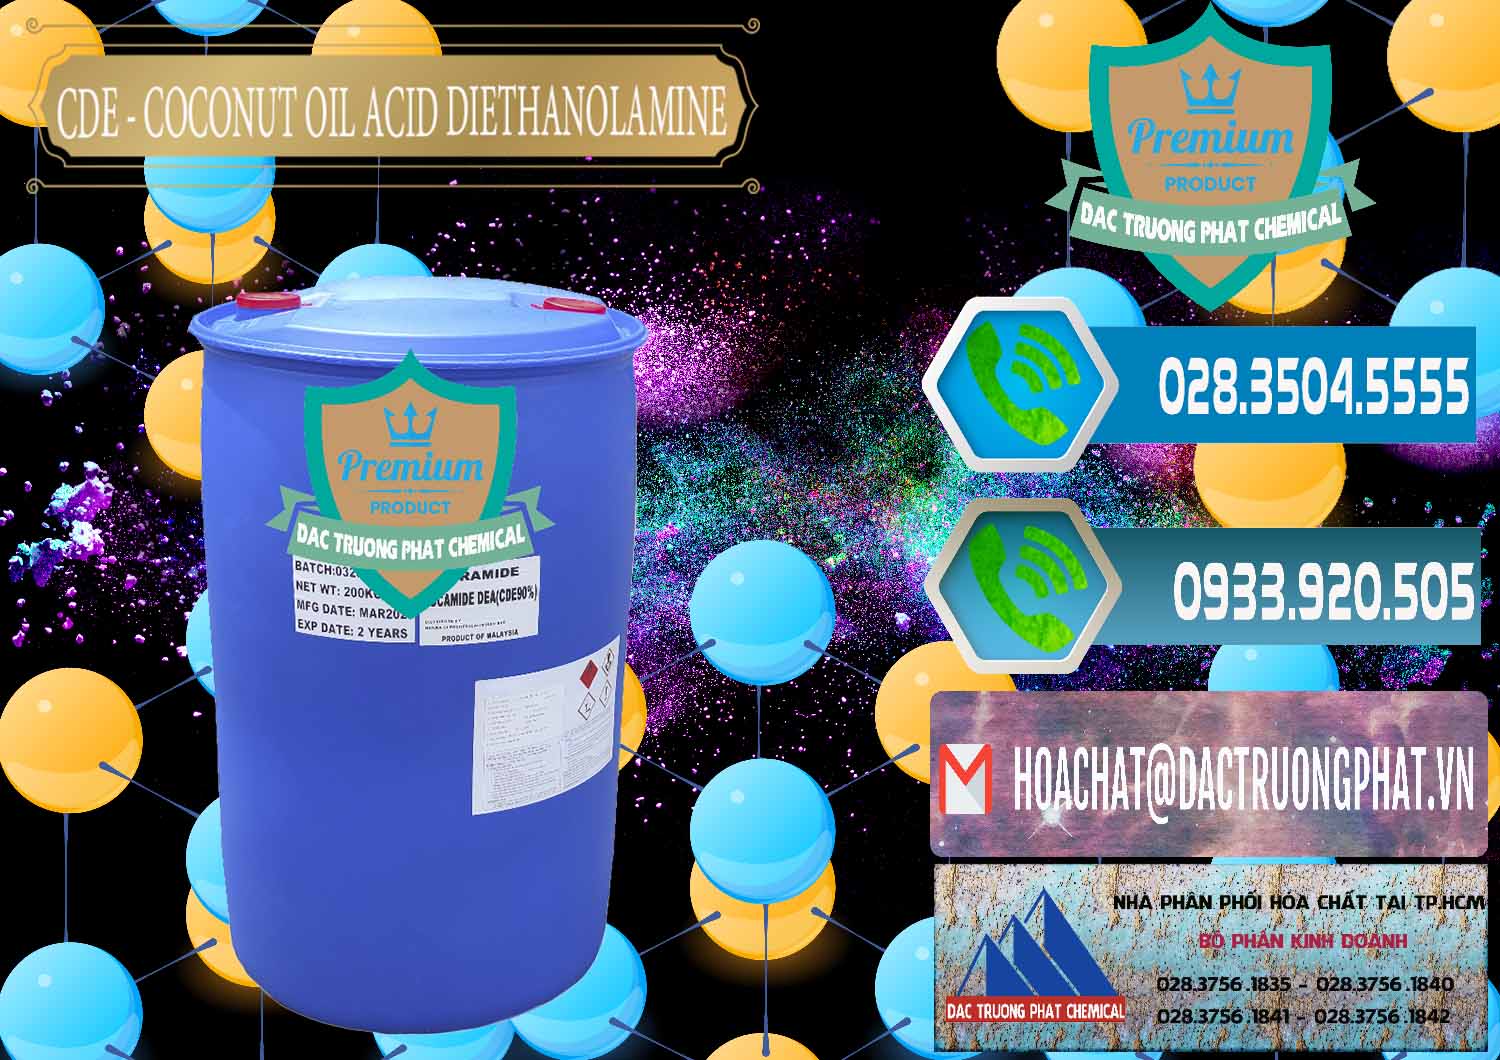 Cty chuyên cung cấp và bán CDE - Coconut Oil Acid Diethanolamine Mã Lai Malaysia - 0311 - Công ty nhập khẩu ( phân phối ) hóa chất tại TP.HCM - congtyhoachat.net